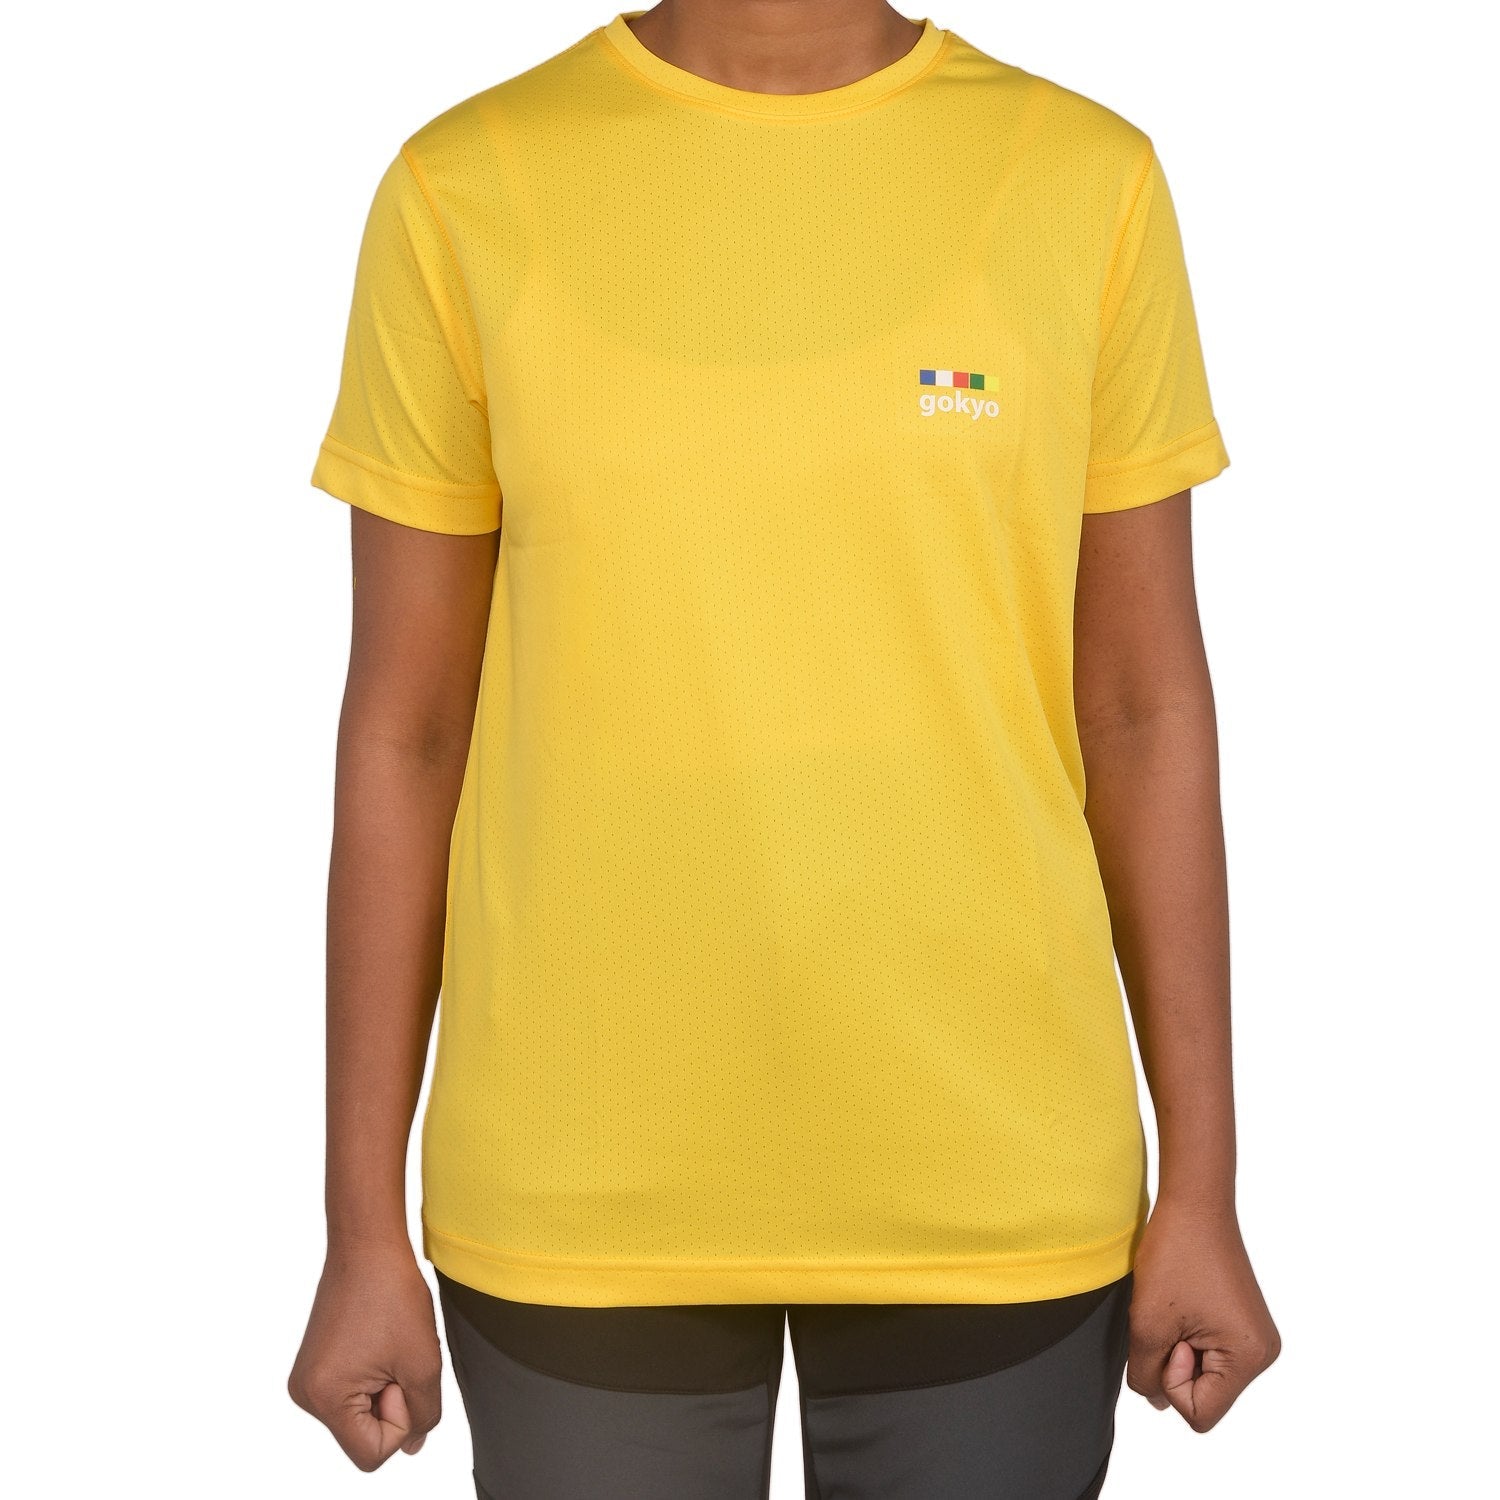 Buy Gokyo Kalimpong Activewear DryFit Tshirt - Women Lemon Yellow | Trekking & Hiking T-shirts at Gokyo Outdoor Clothing & Gear